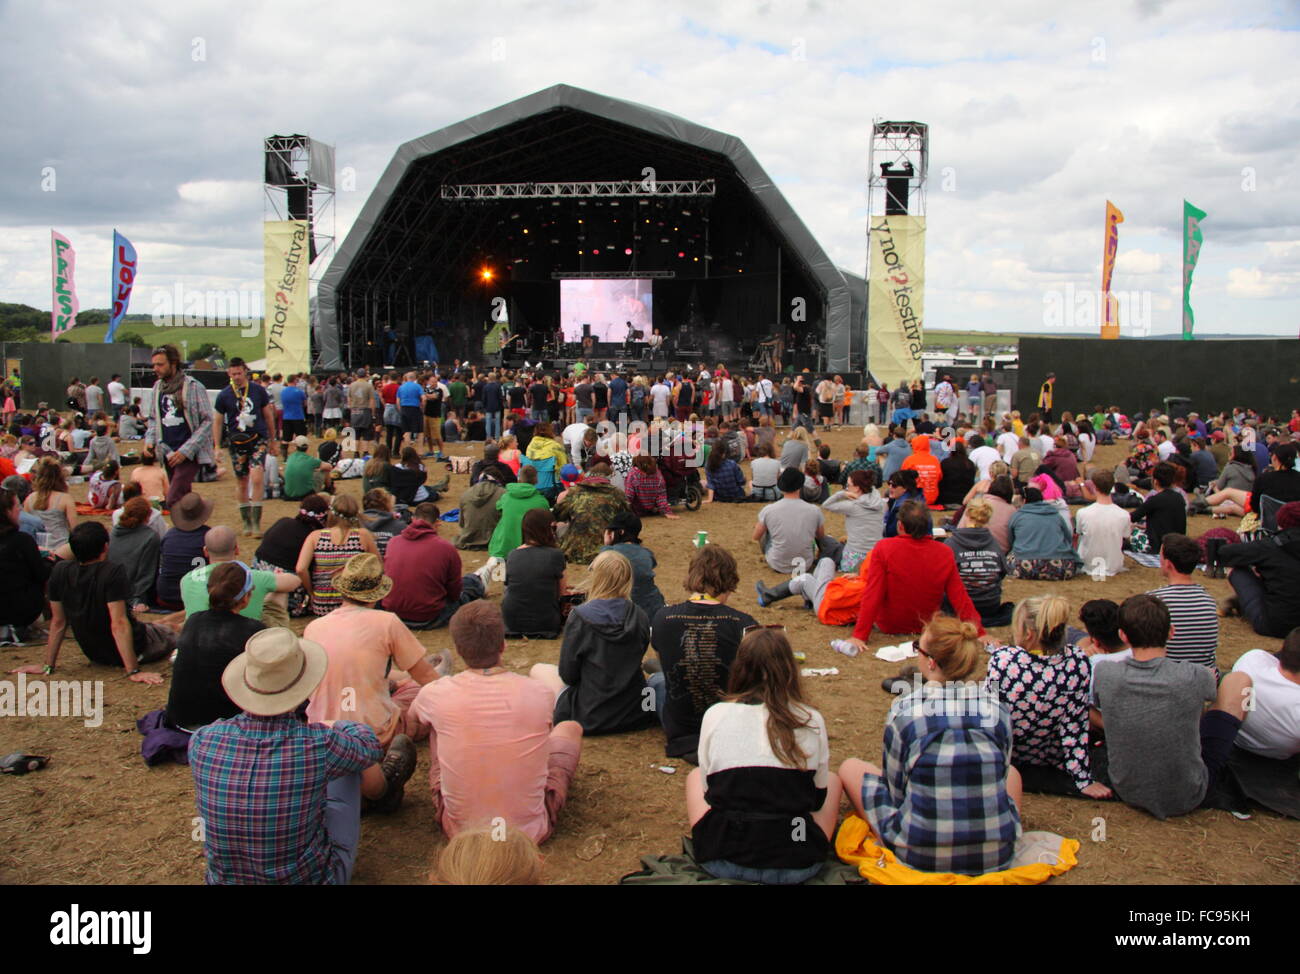 Les festivaliers se réunissent autour de la scène principale au festival de musique, Y'a pas l'Angleterre Derbyshire UK Banque D'Images